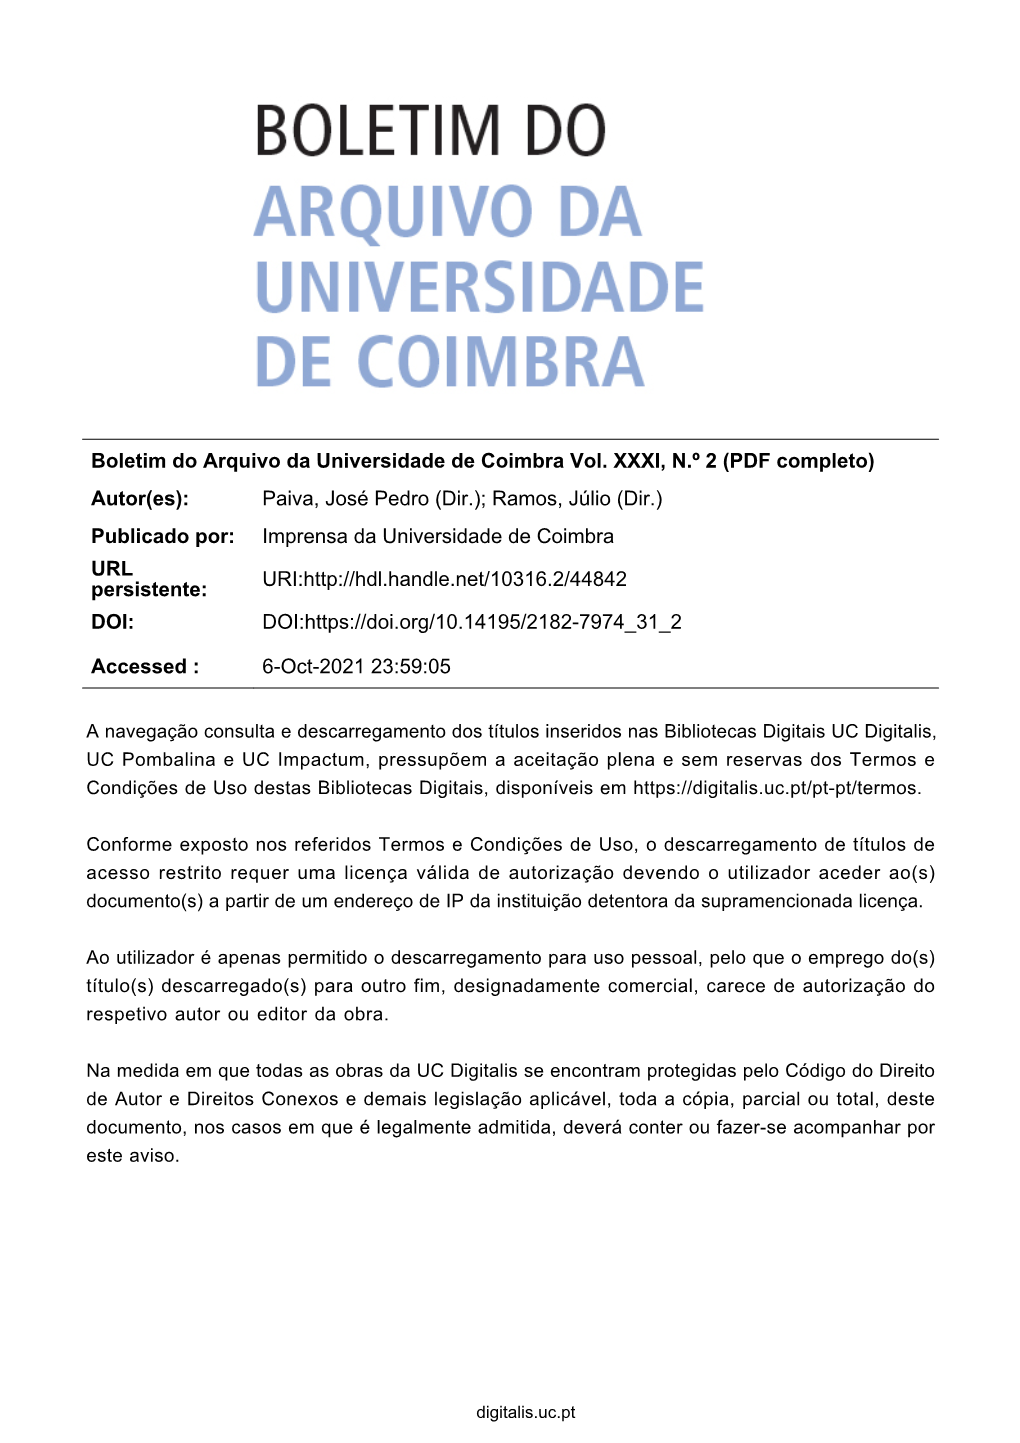 Boletim Do Arquivo Da Universidade De Coimbra Vol. XXXI, N.º 2 (PDF Completo) Autor(Es): Paiva, José Pedro (Dir.); Ramos